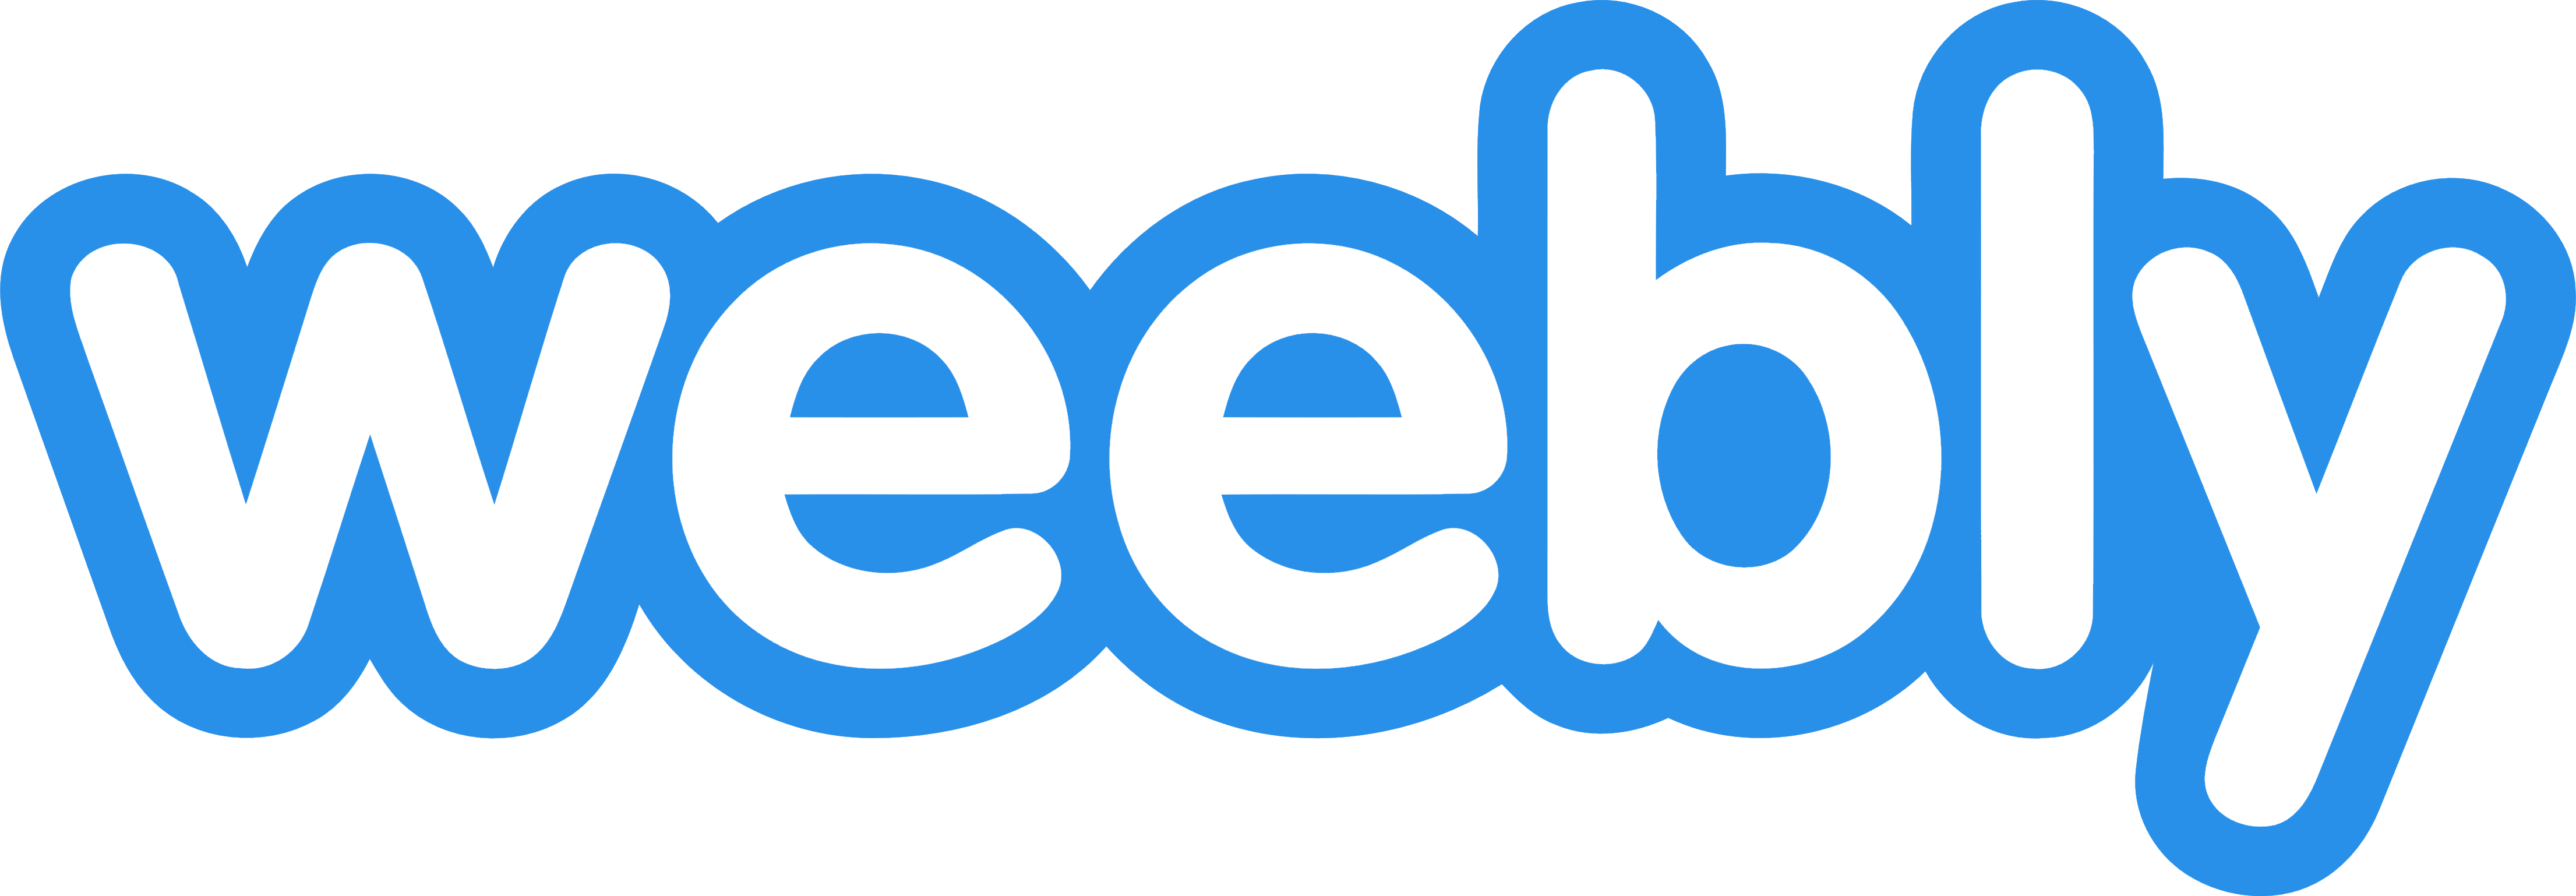 Weebly logo, logotype